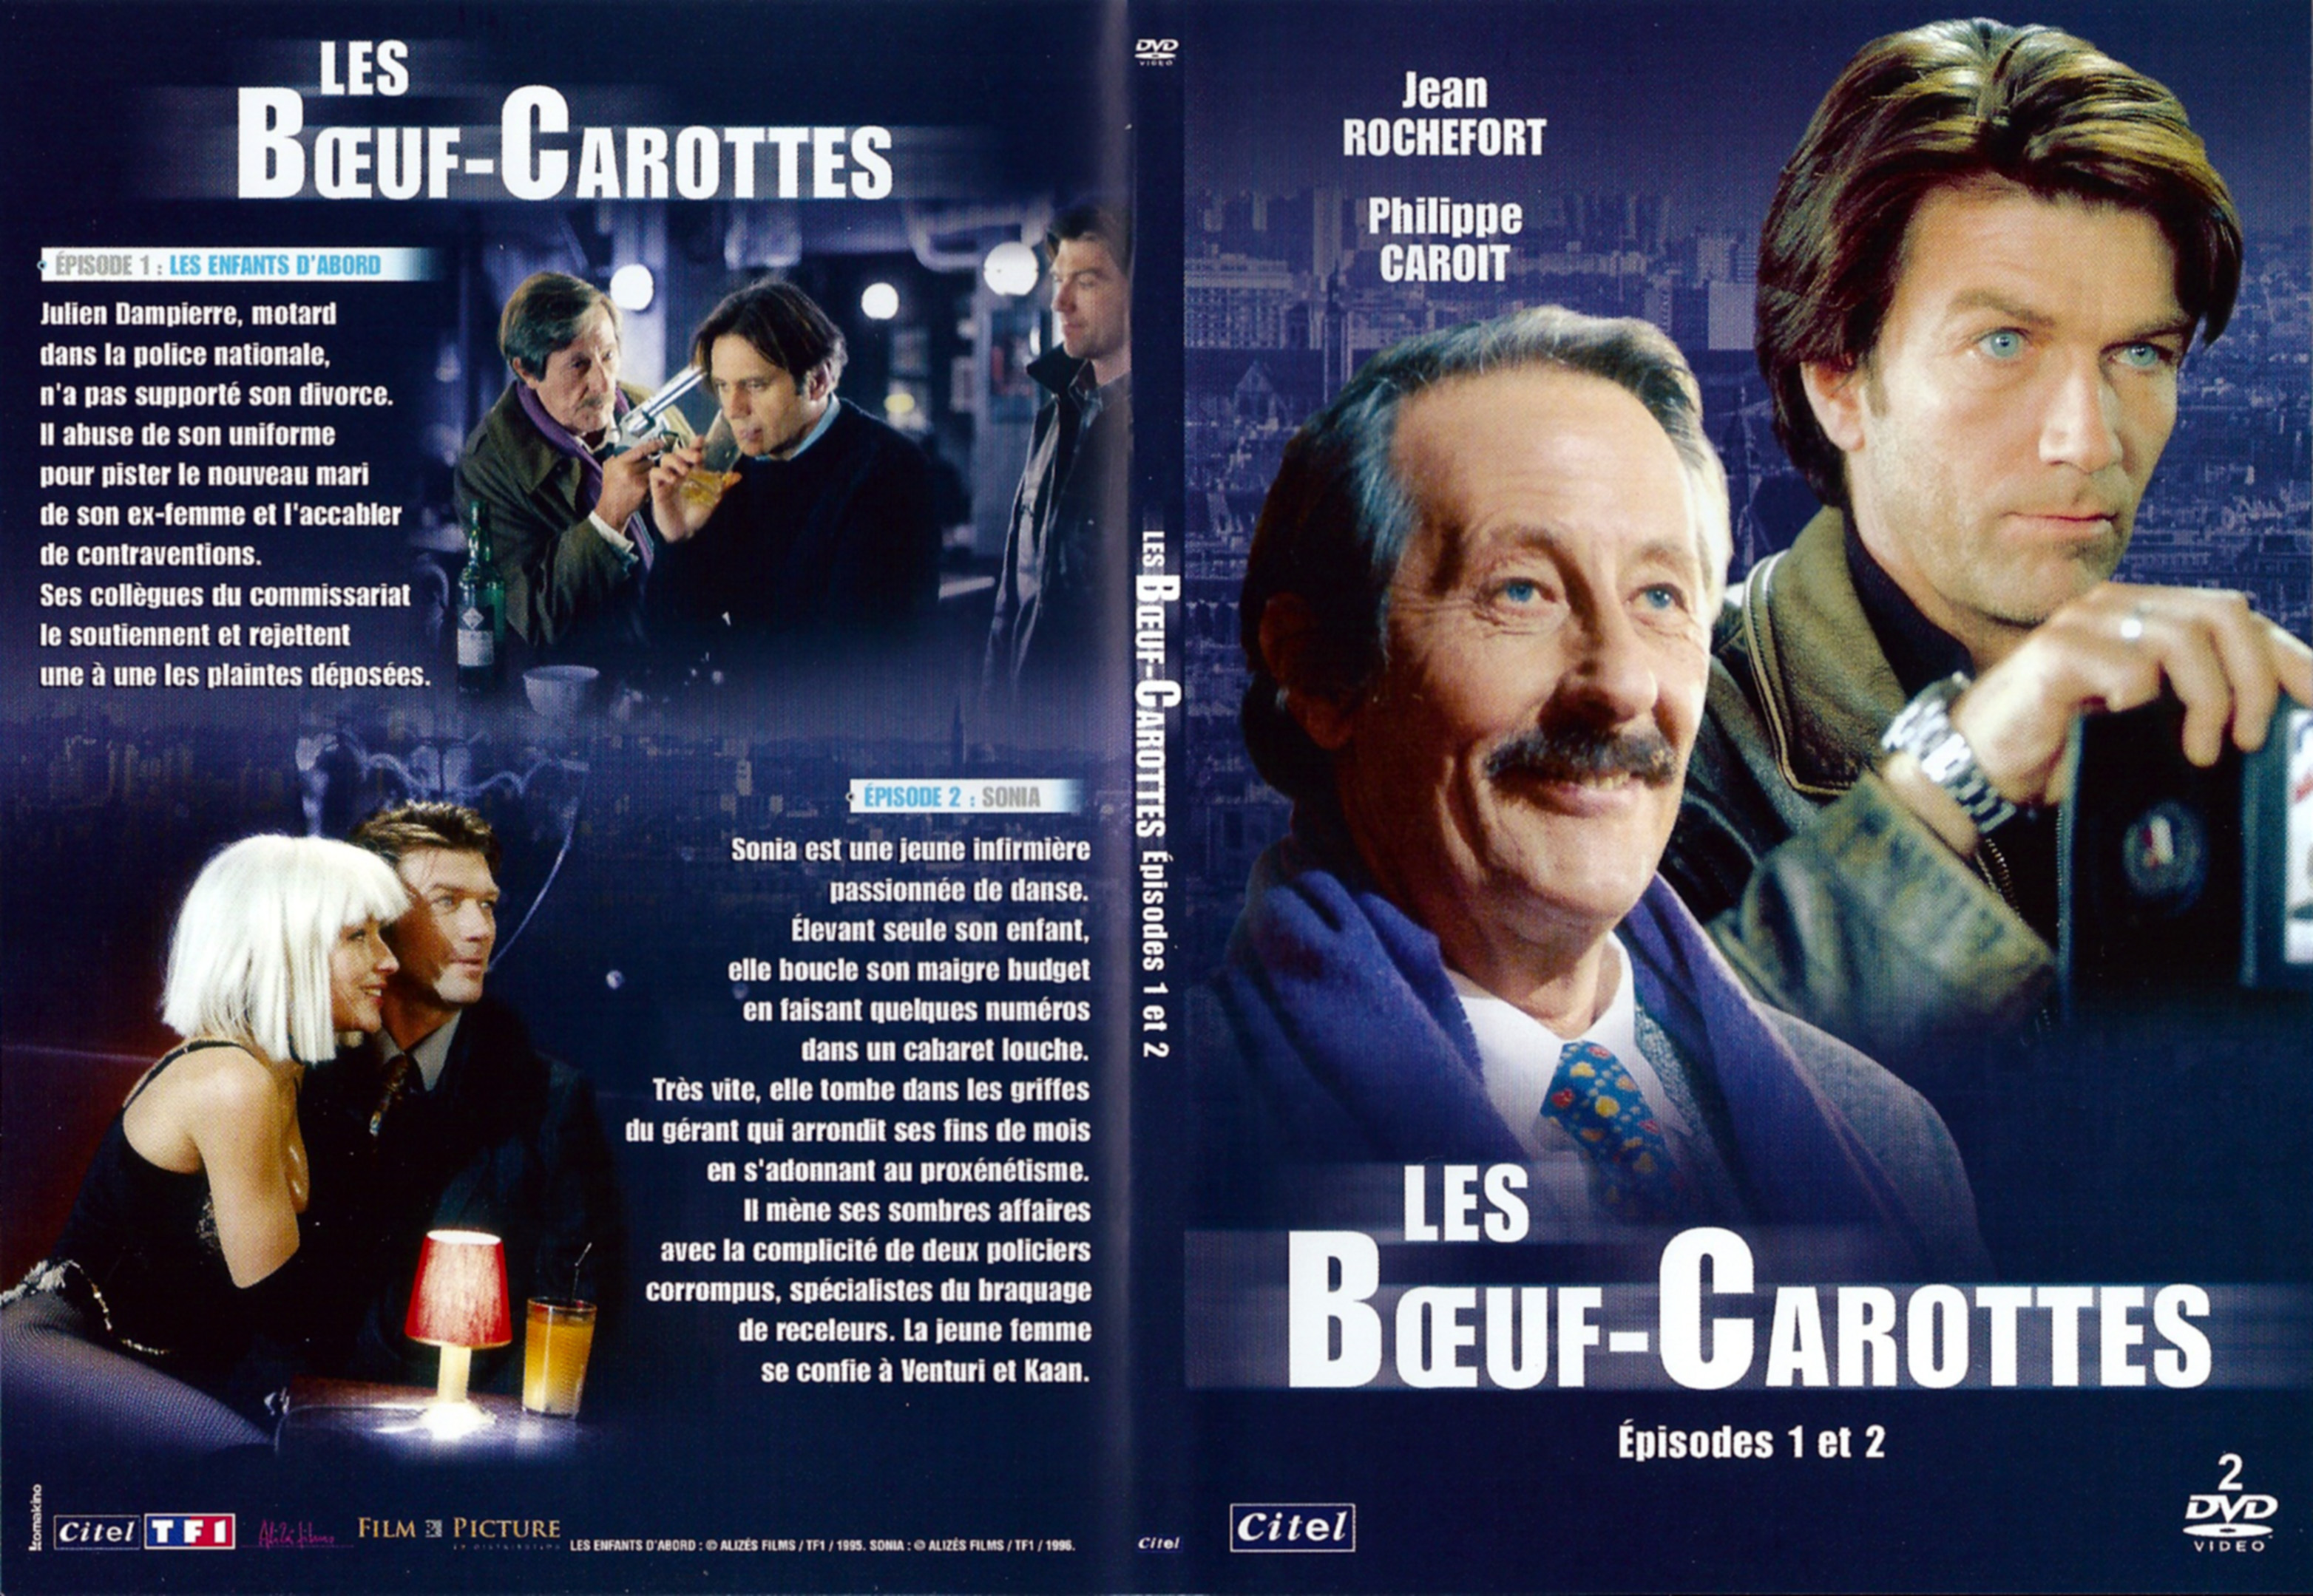 Jaquette DVD Les Boeuf-Carottes DVD 1 & 2